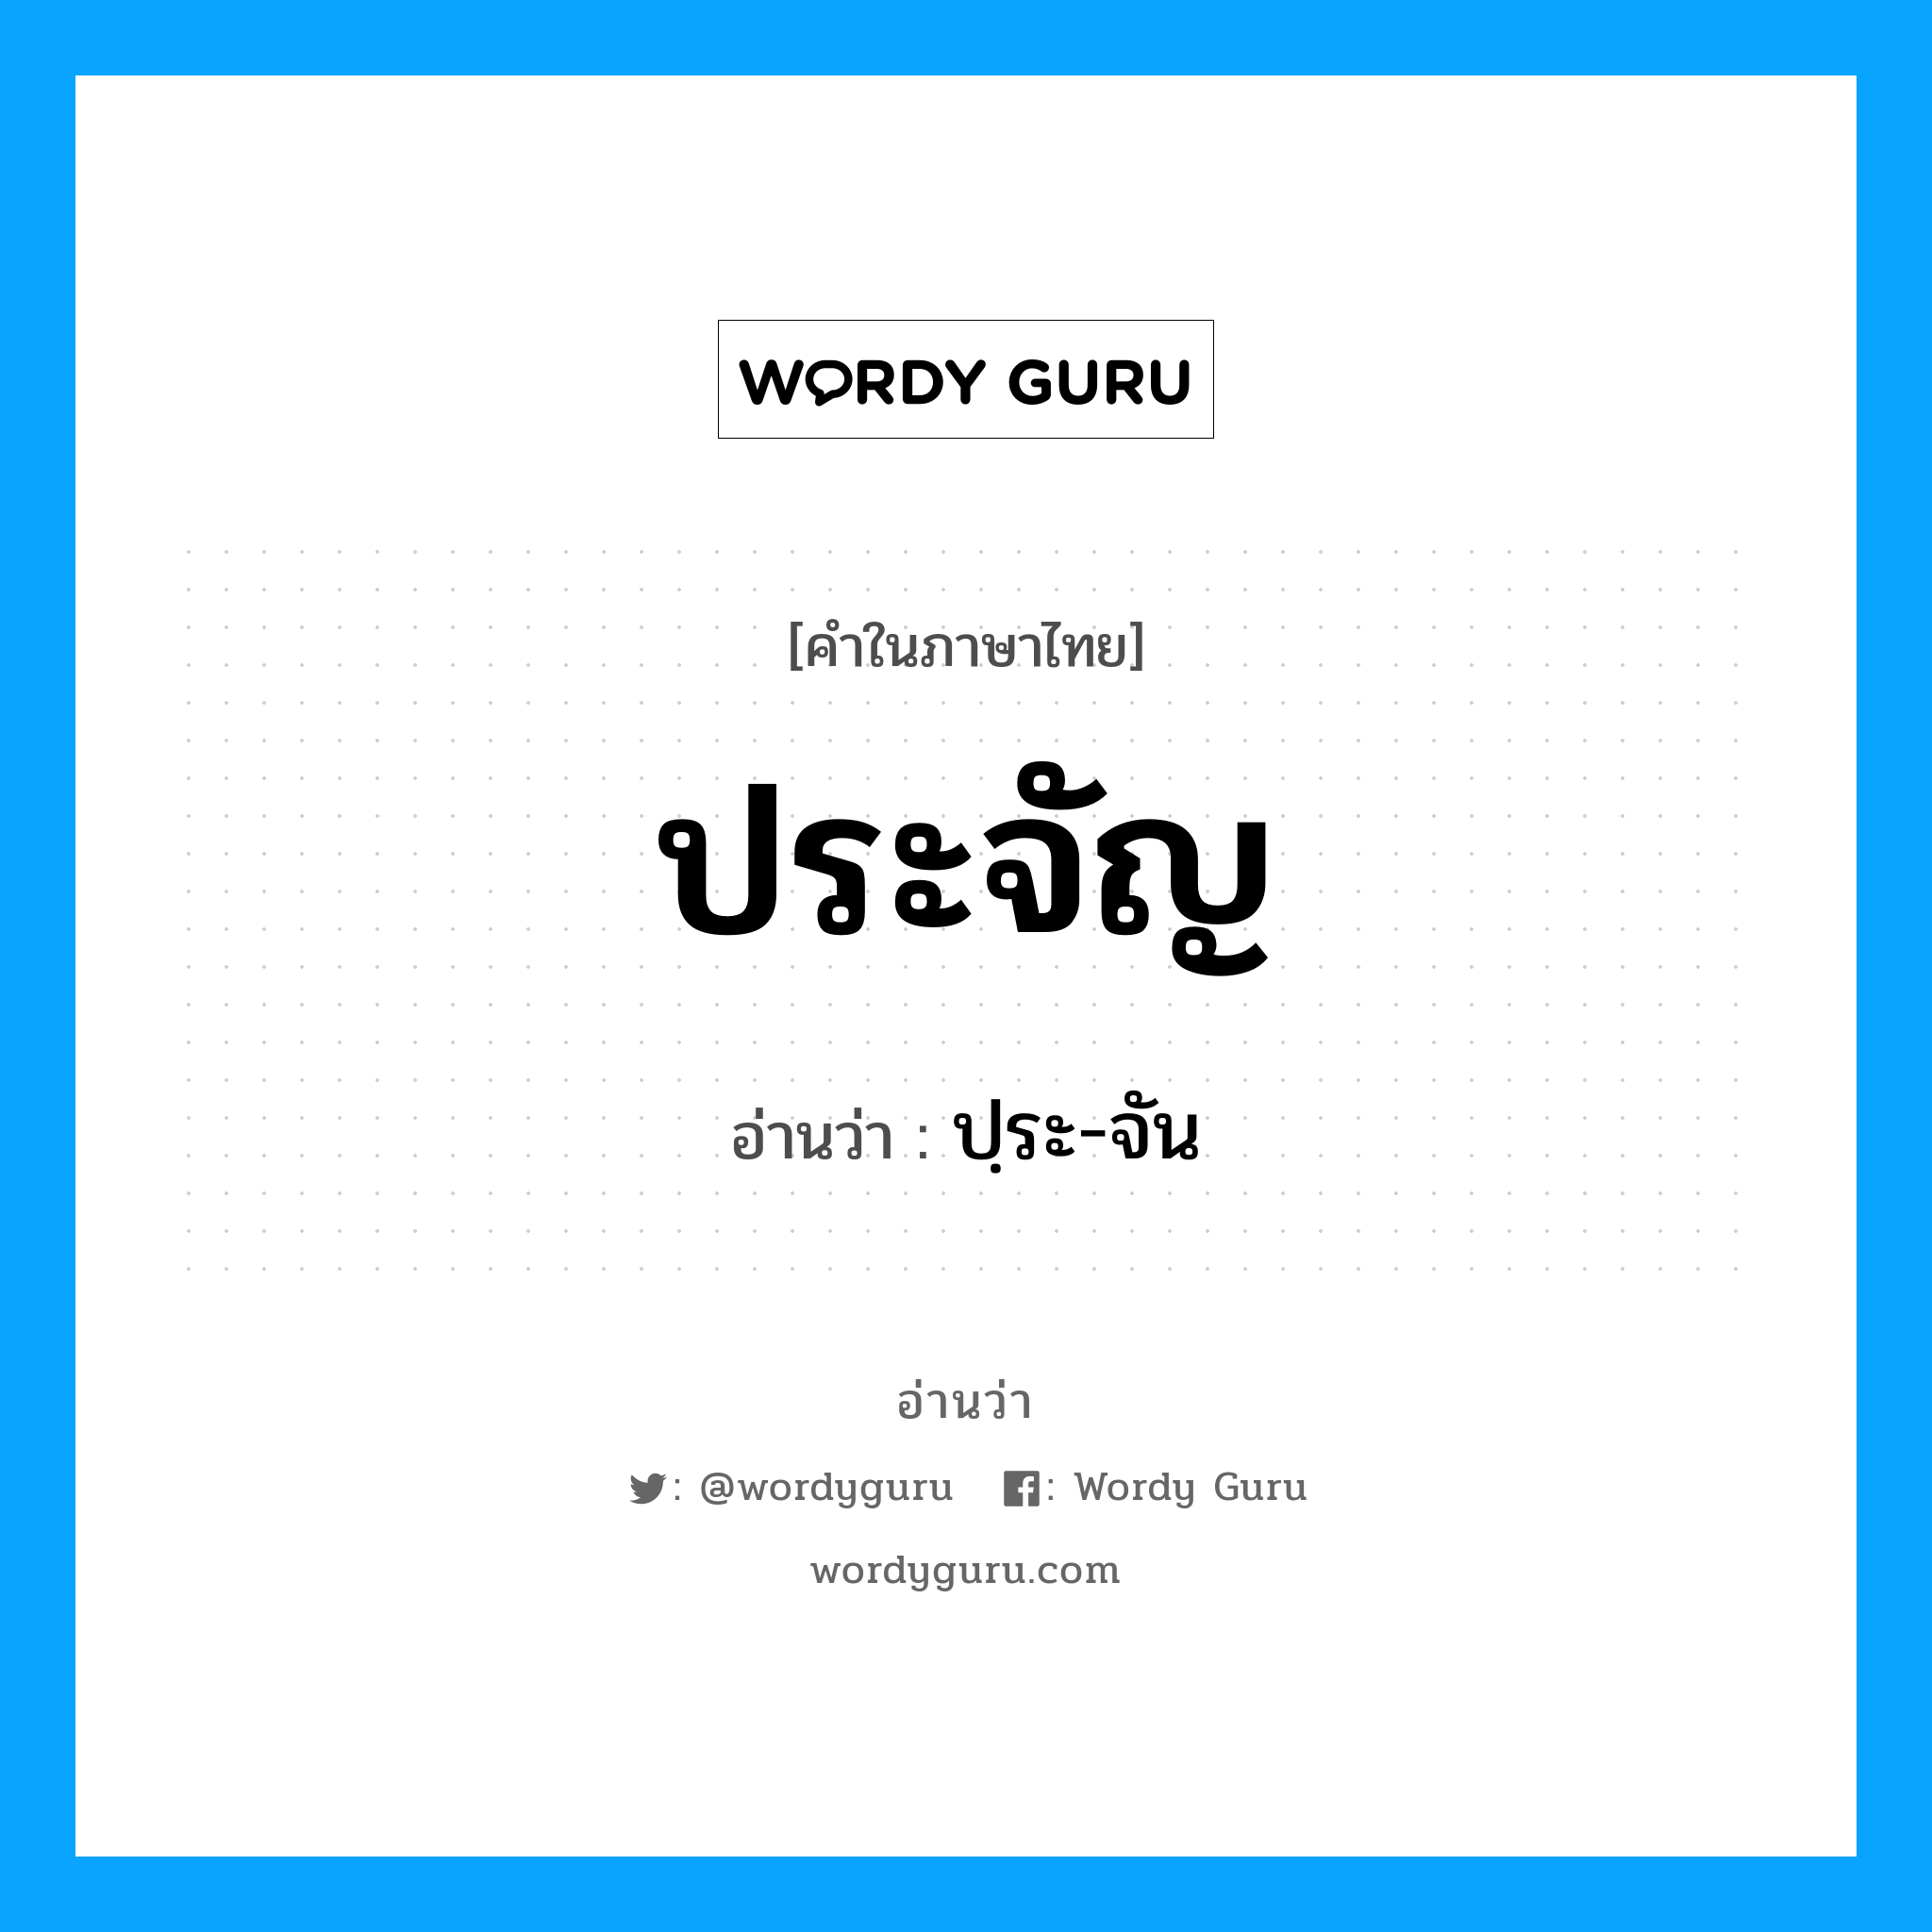 ปฺระ-จัน เป็นคำอ่านของคำไหน?, คำในภาษาไทย ปฺระ-จัน อ่านว่า ประจัญ